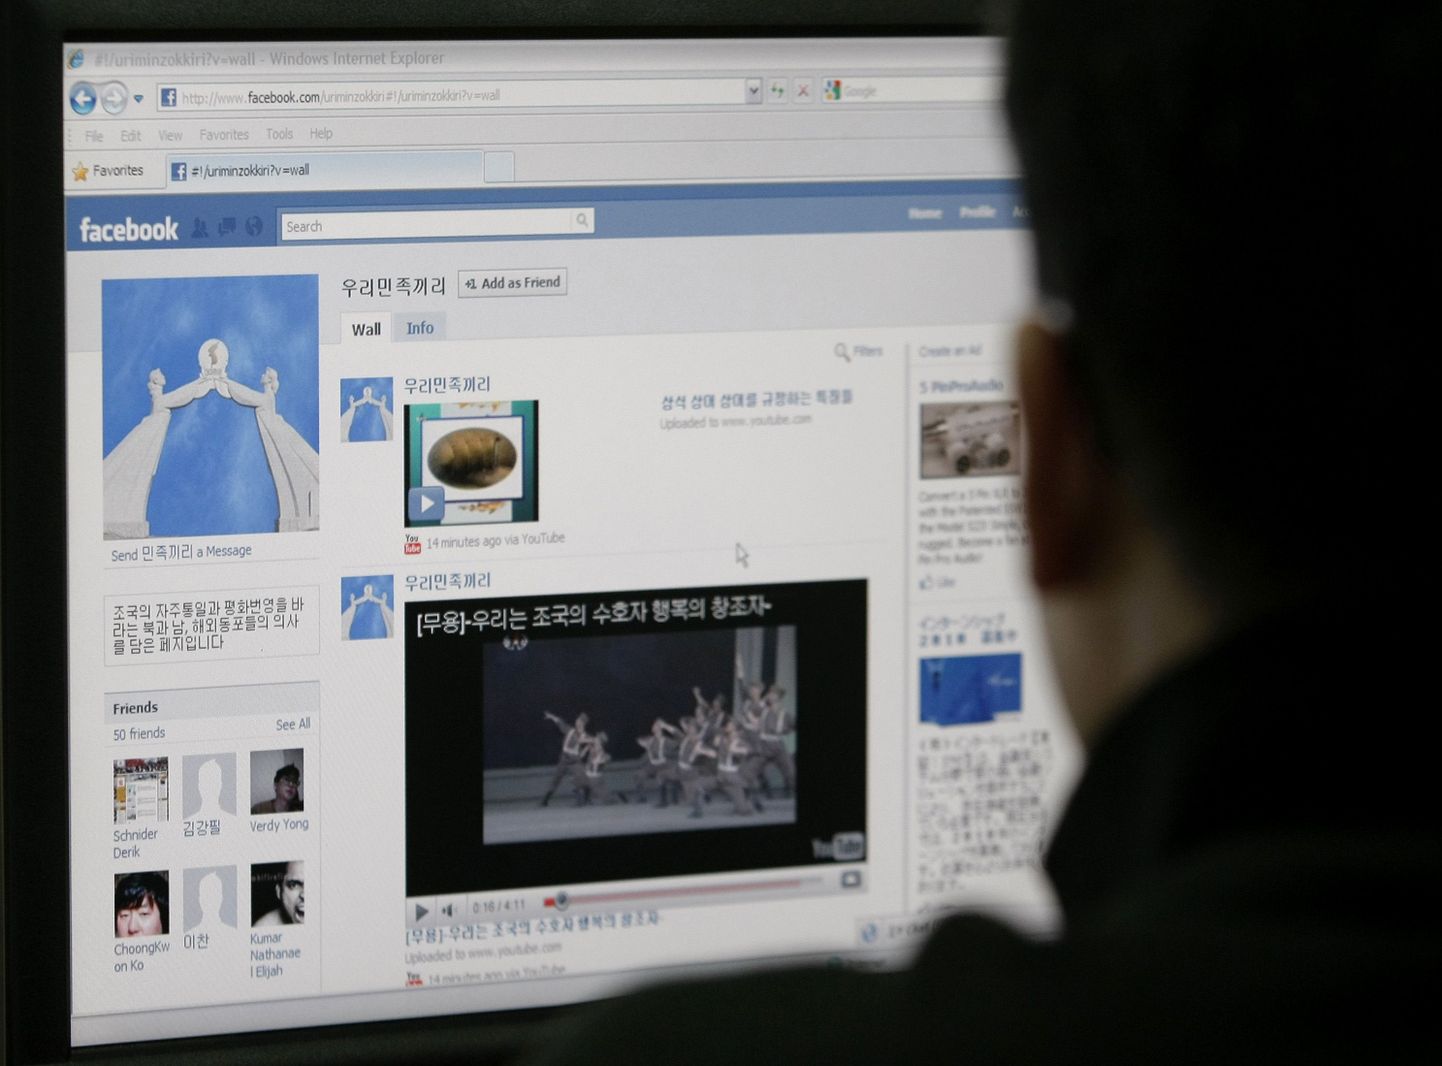 Lõuna-Korea ajakirjanik vaatamas Põhja-Korea saiti Facebookis.